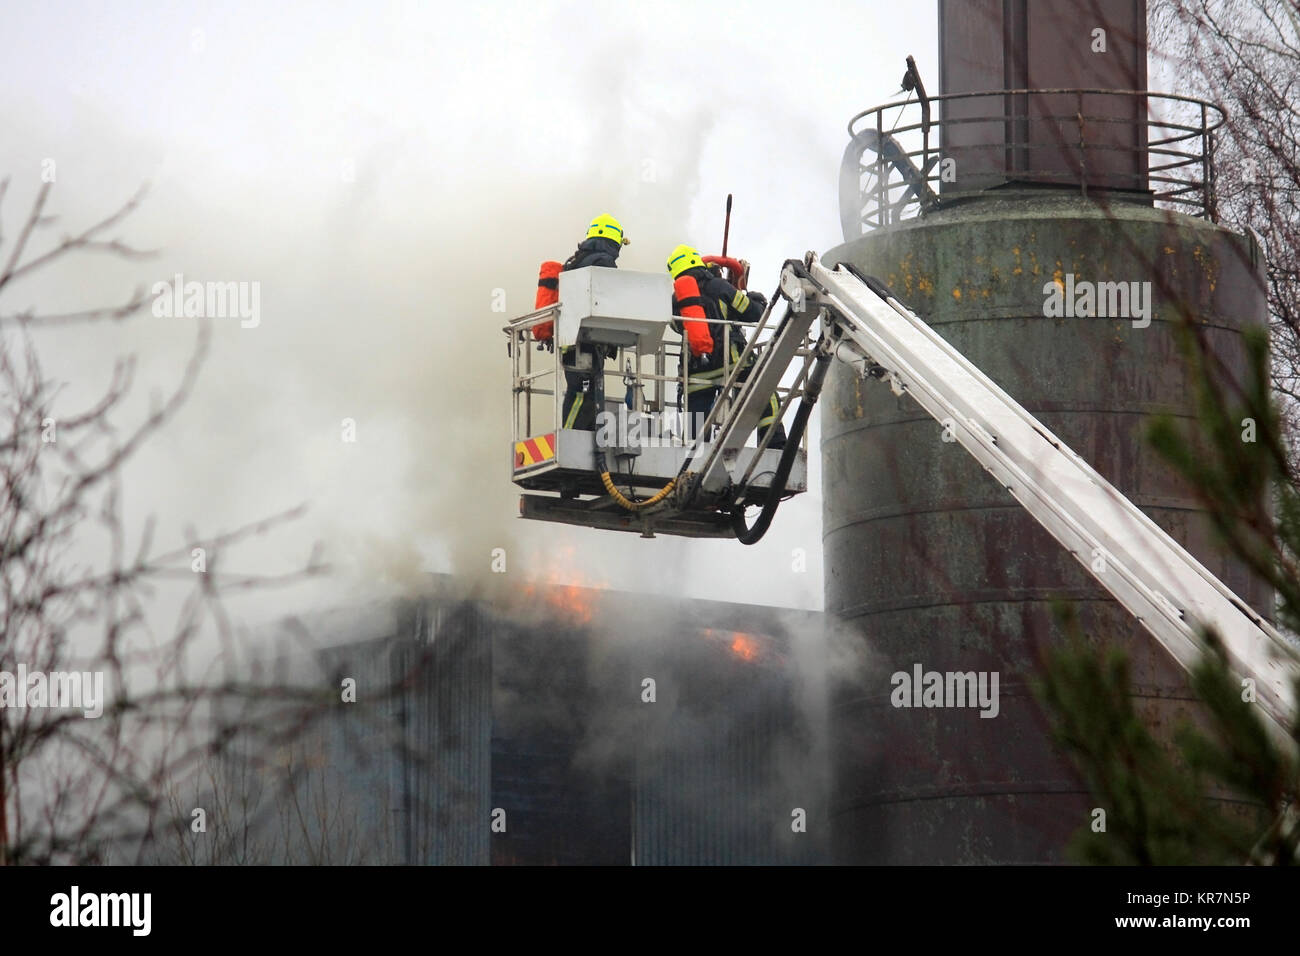 SALO, Finnland - 16. FEBRUAR 2014: Feuerwehrmänner löschen Feuer auf einem hydraulischen Kran Plattform an der Salo Zementwerk. Stockfoto